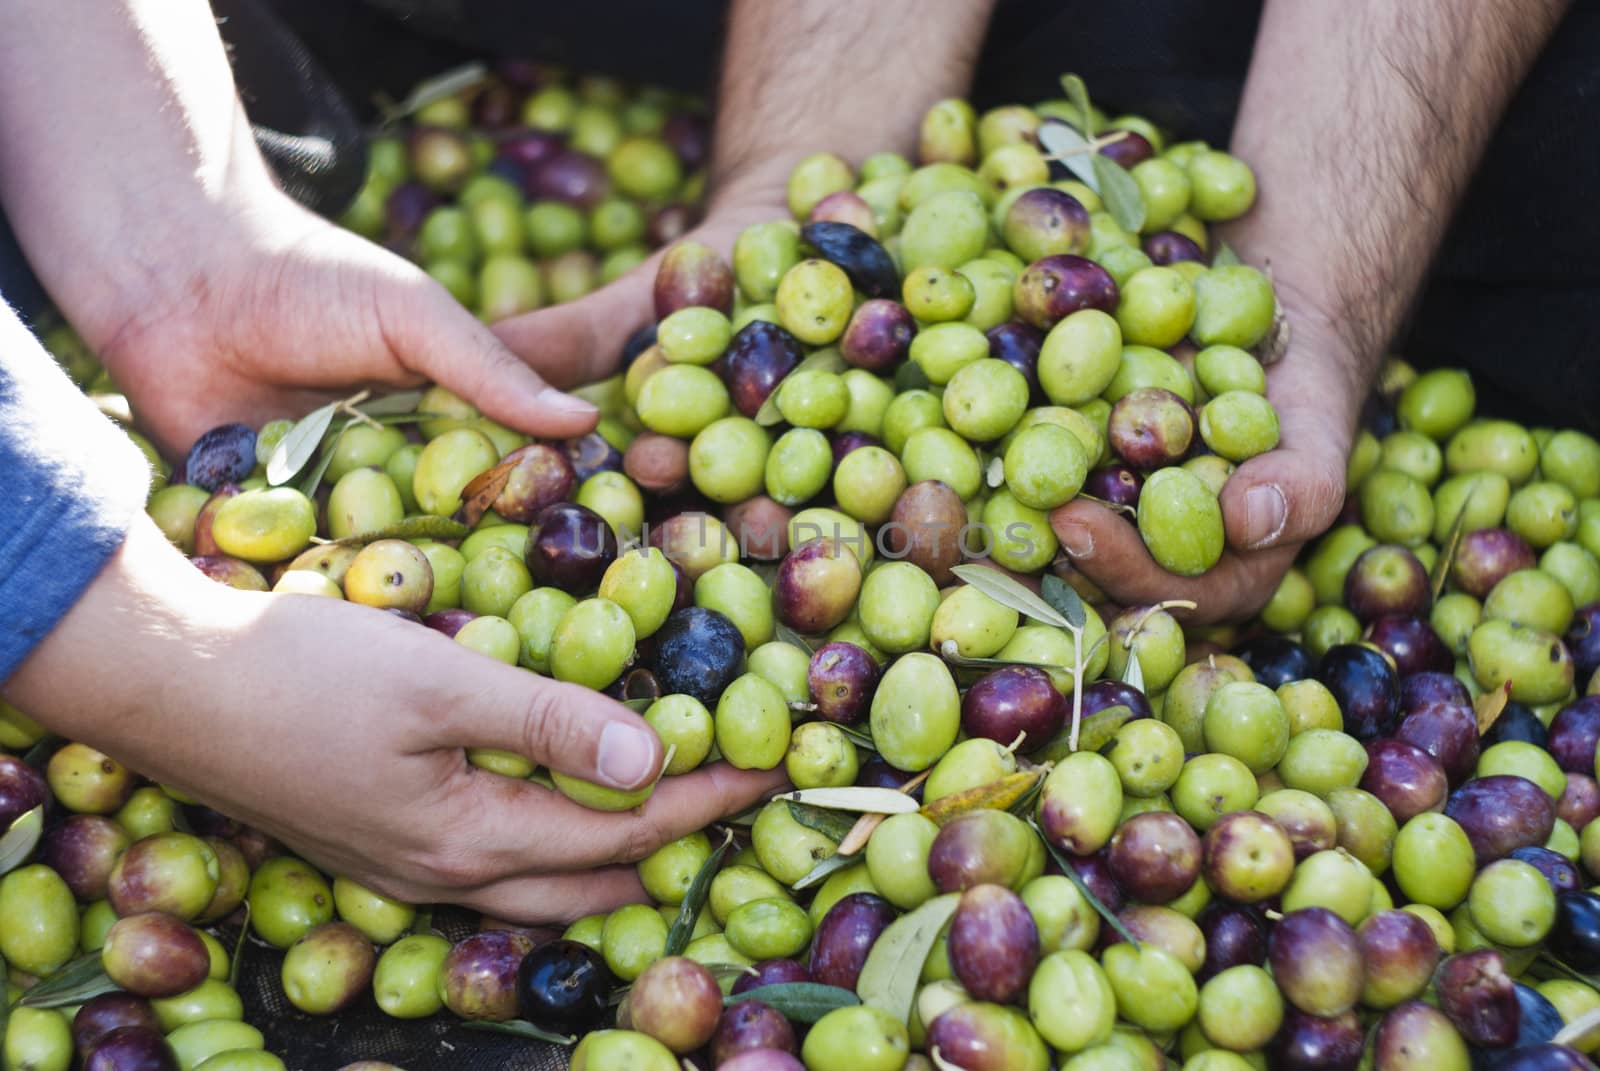 Olives picking in Sicily by gandolfocannatella